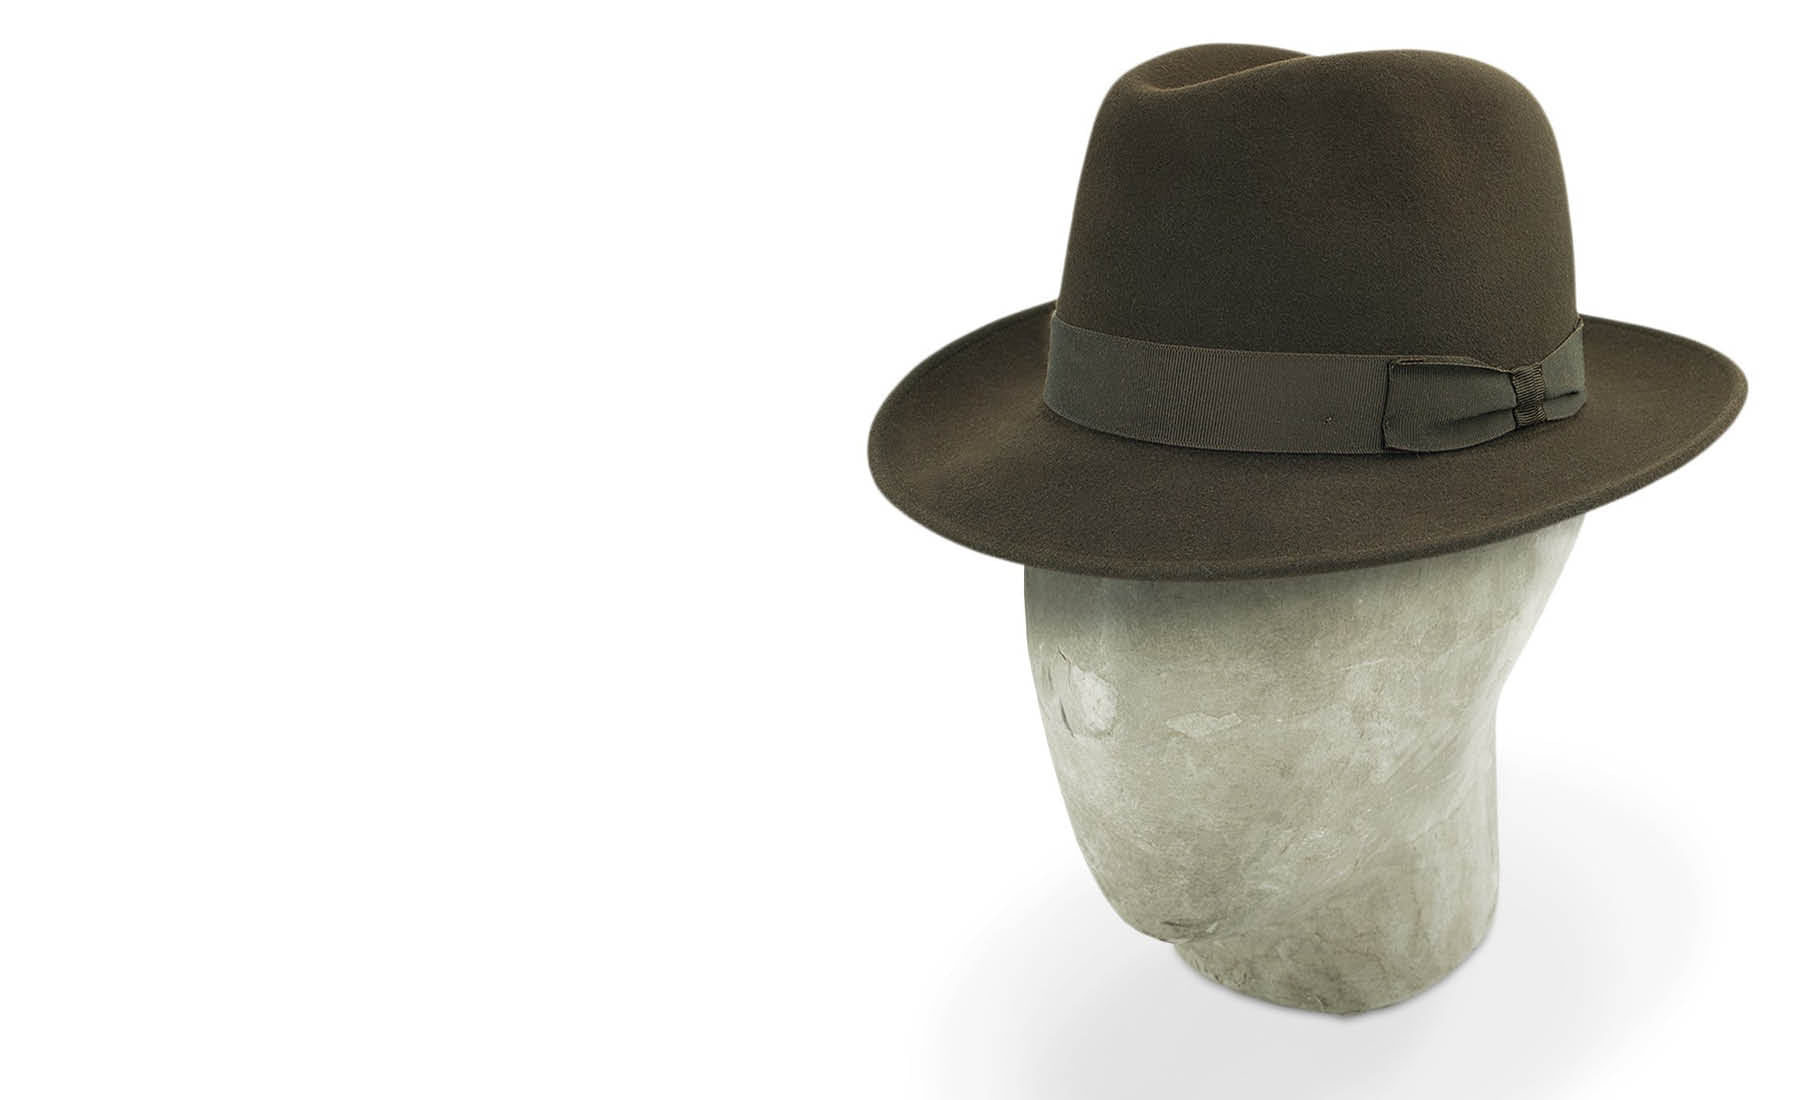 A True Classic - Burlington Trilby Hats